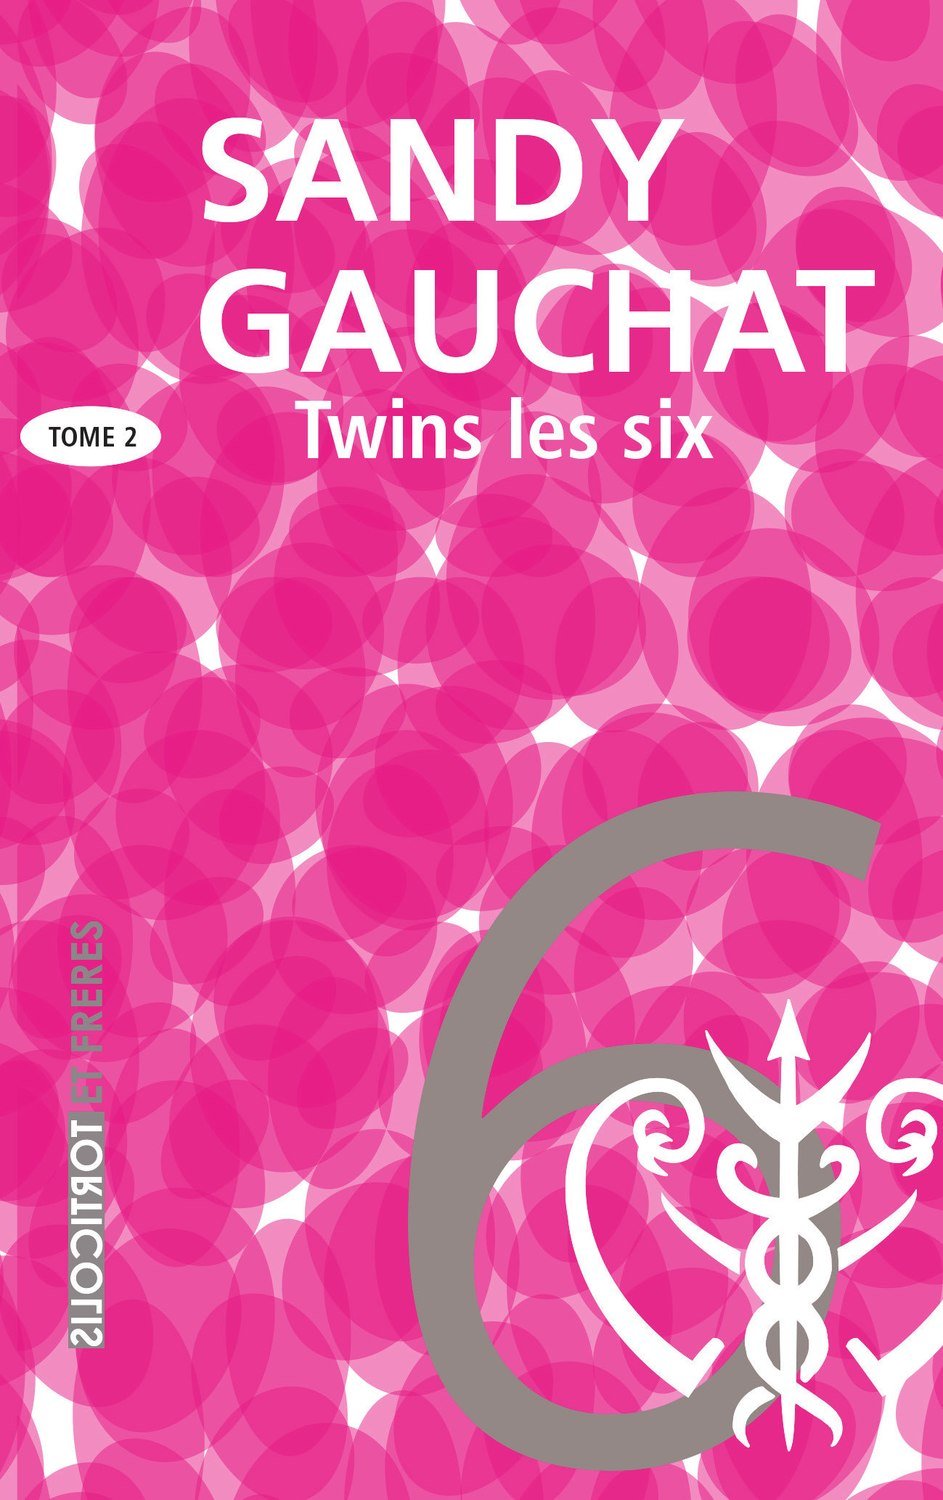 Twins, la trilogie, Tome 2, "Les six", Sandy Gauchat